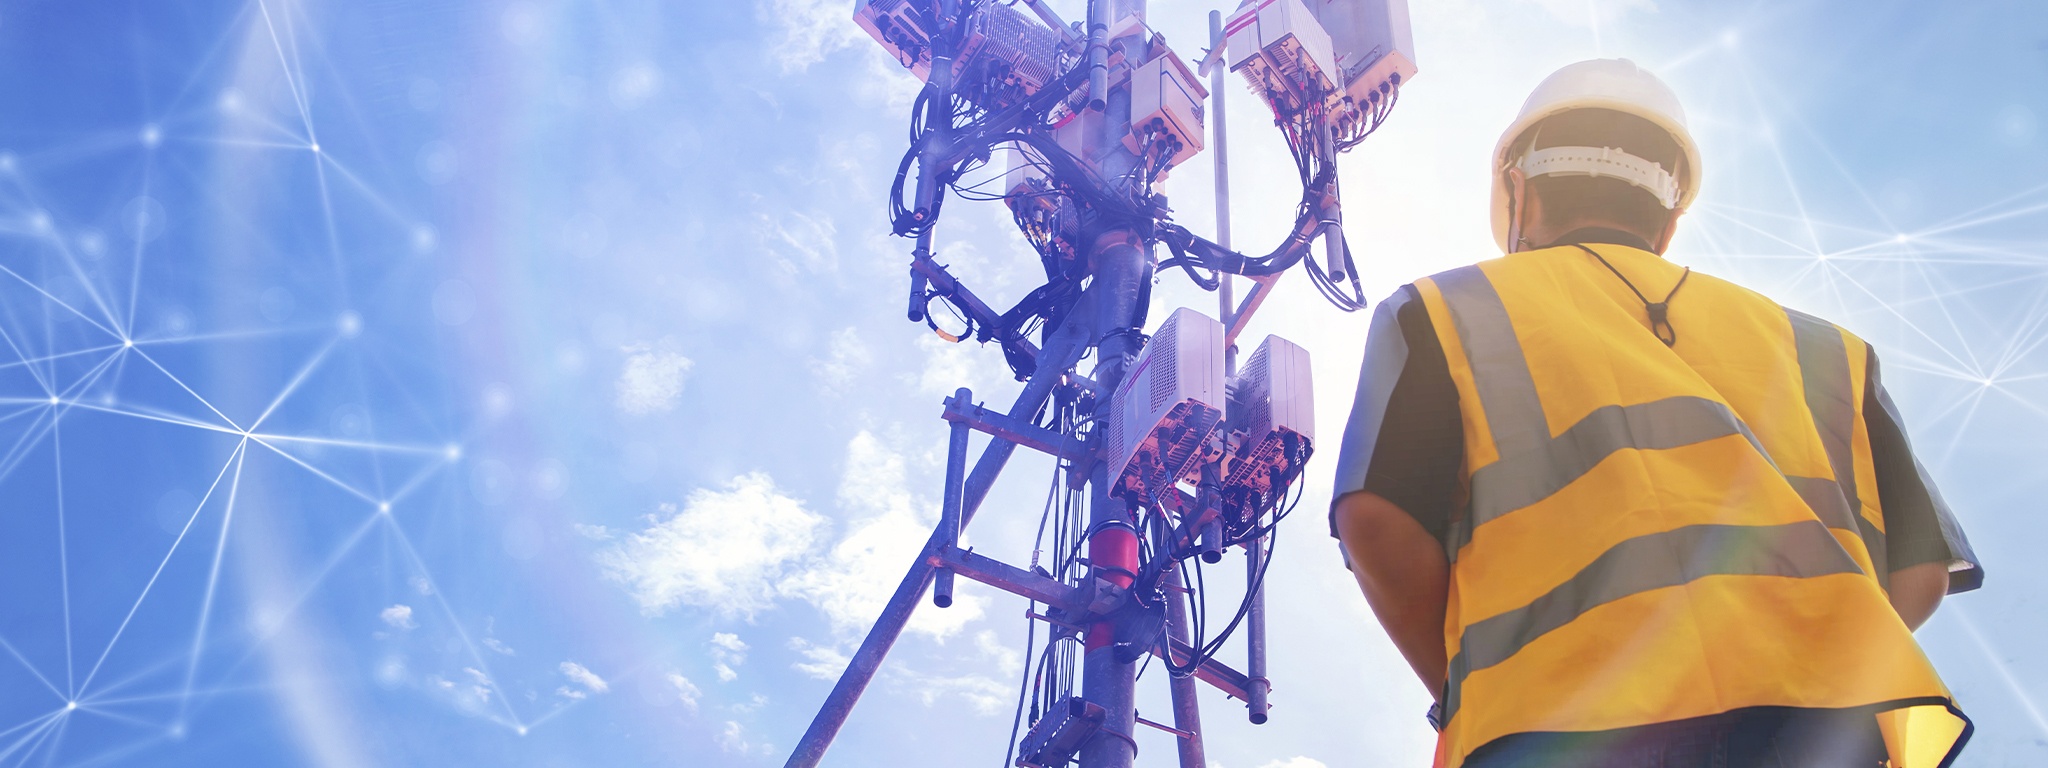 Immagine di un tecnico con elmetto di sicurezza visto di spalle mentre opera in campo su una torre di telecomunicazioni posta davanti a esso